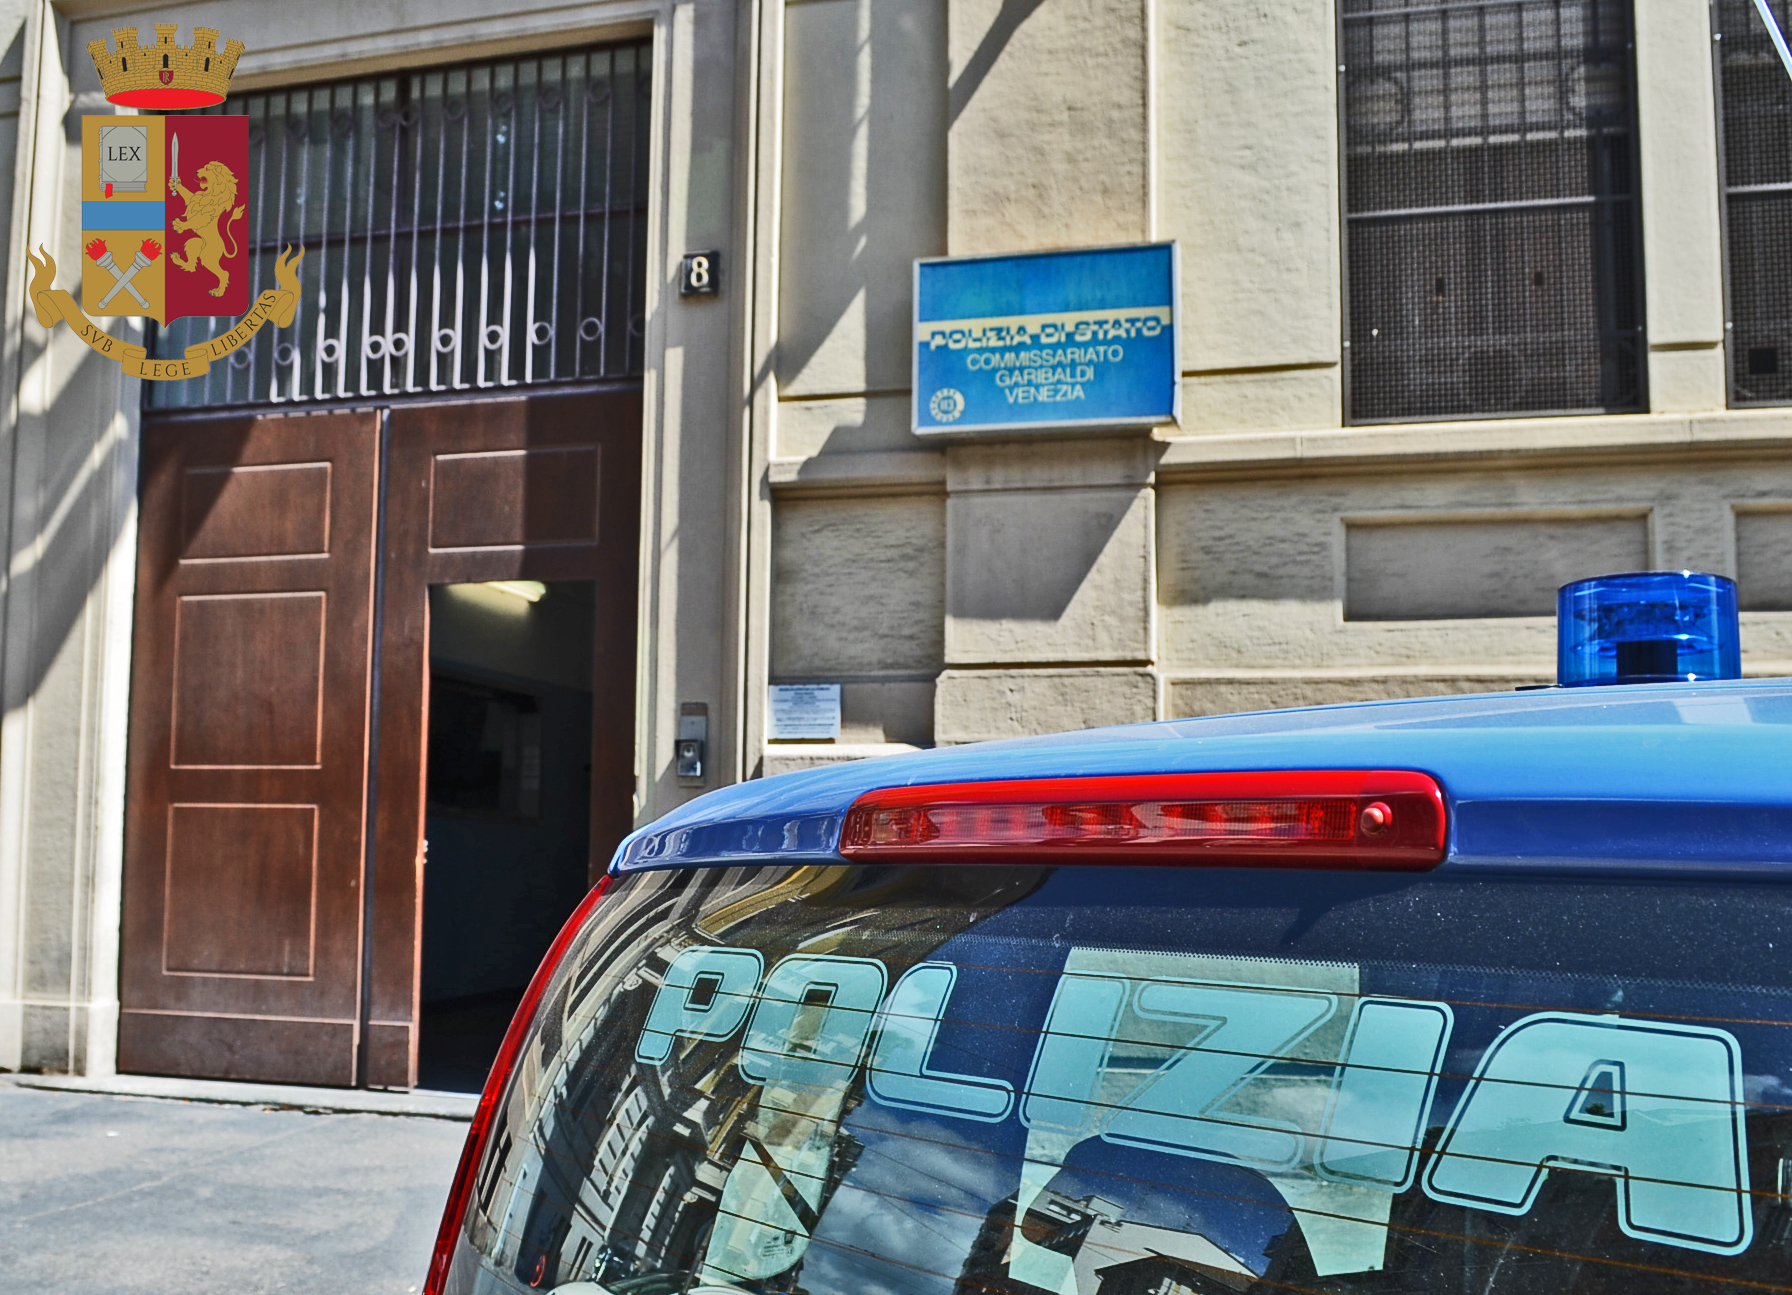 Milano, gli rubano il cellulare per farsi dare i soldi: arrestati